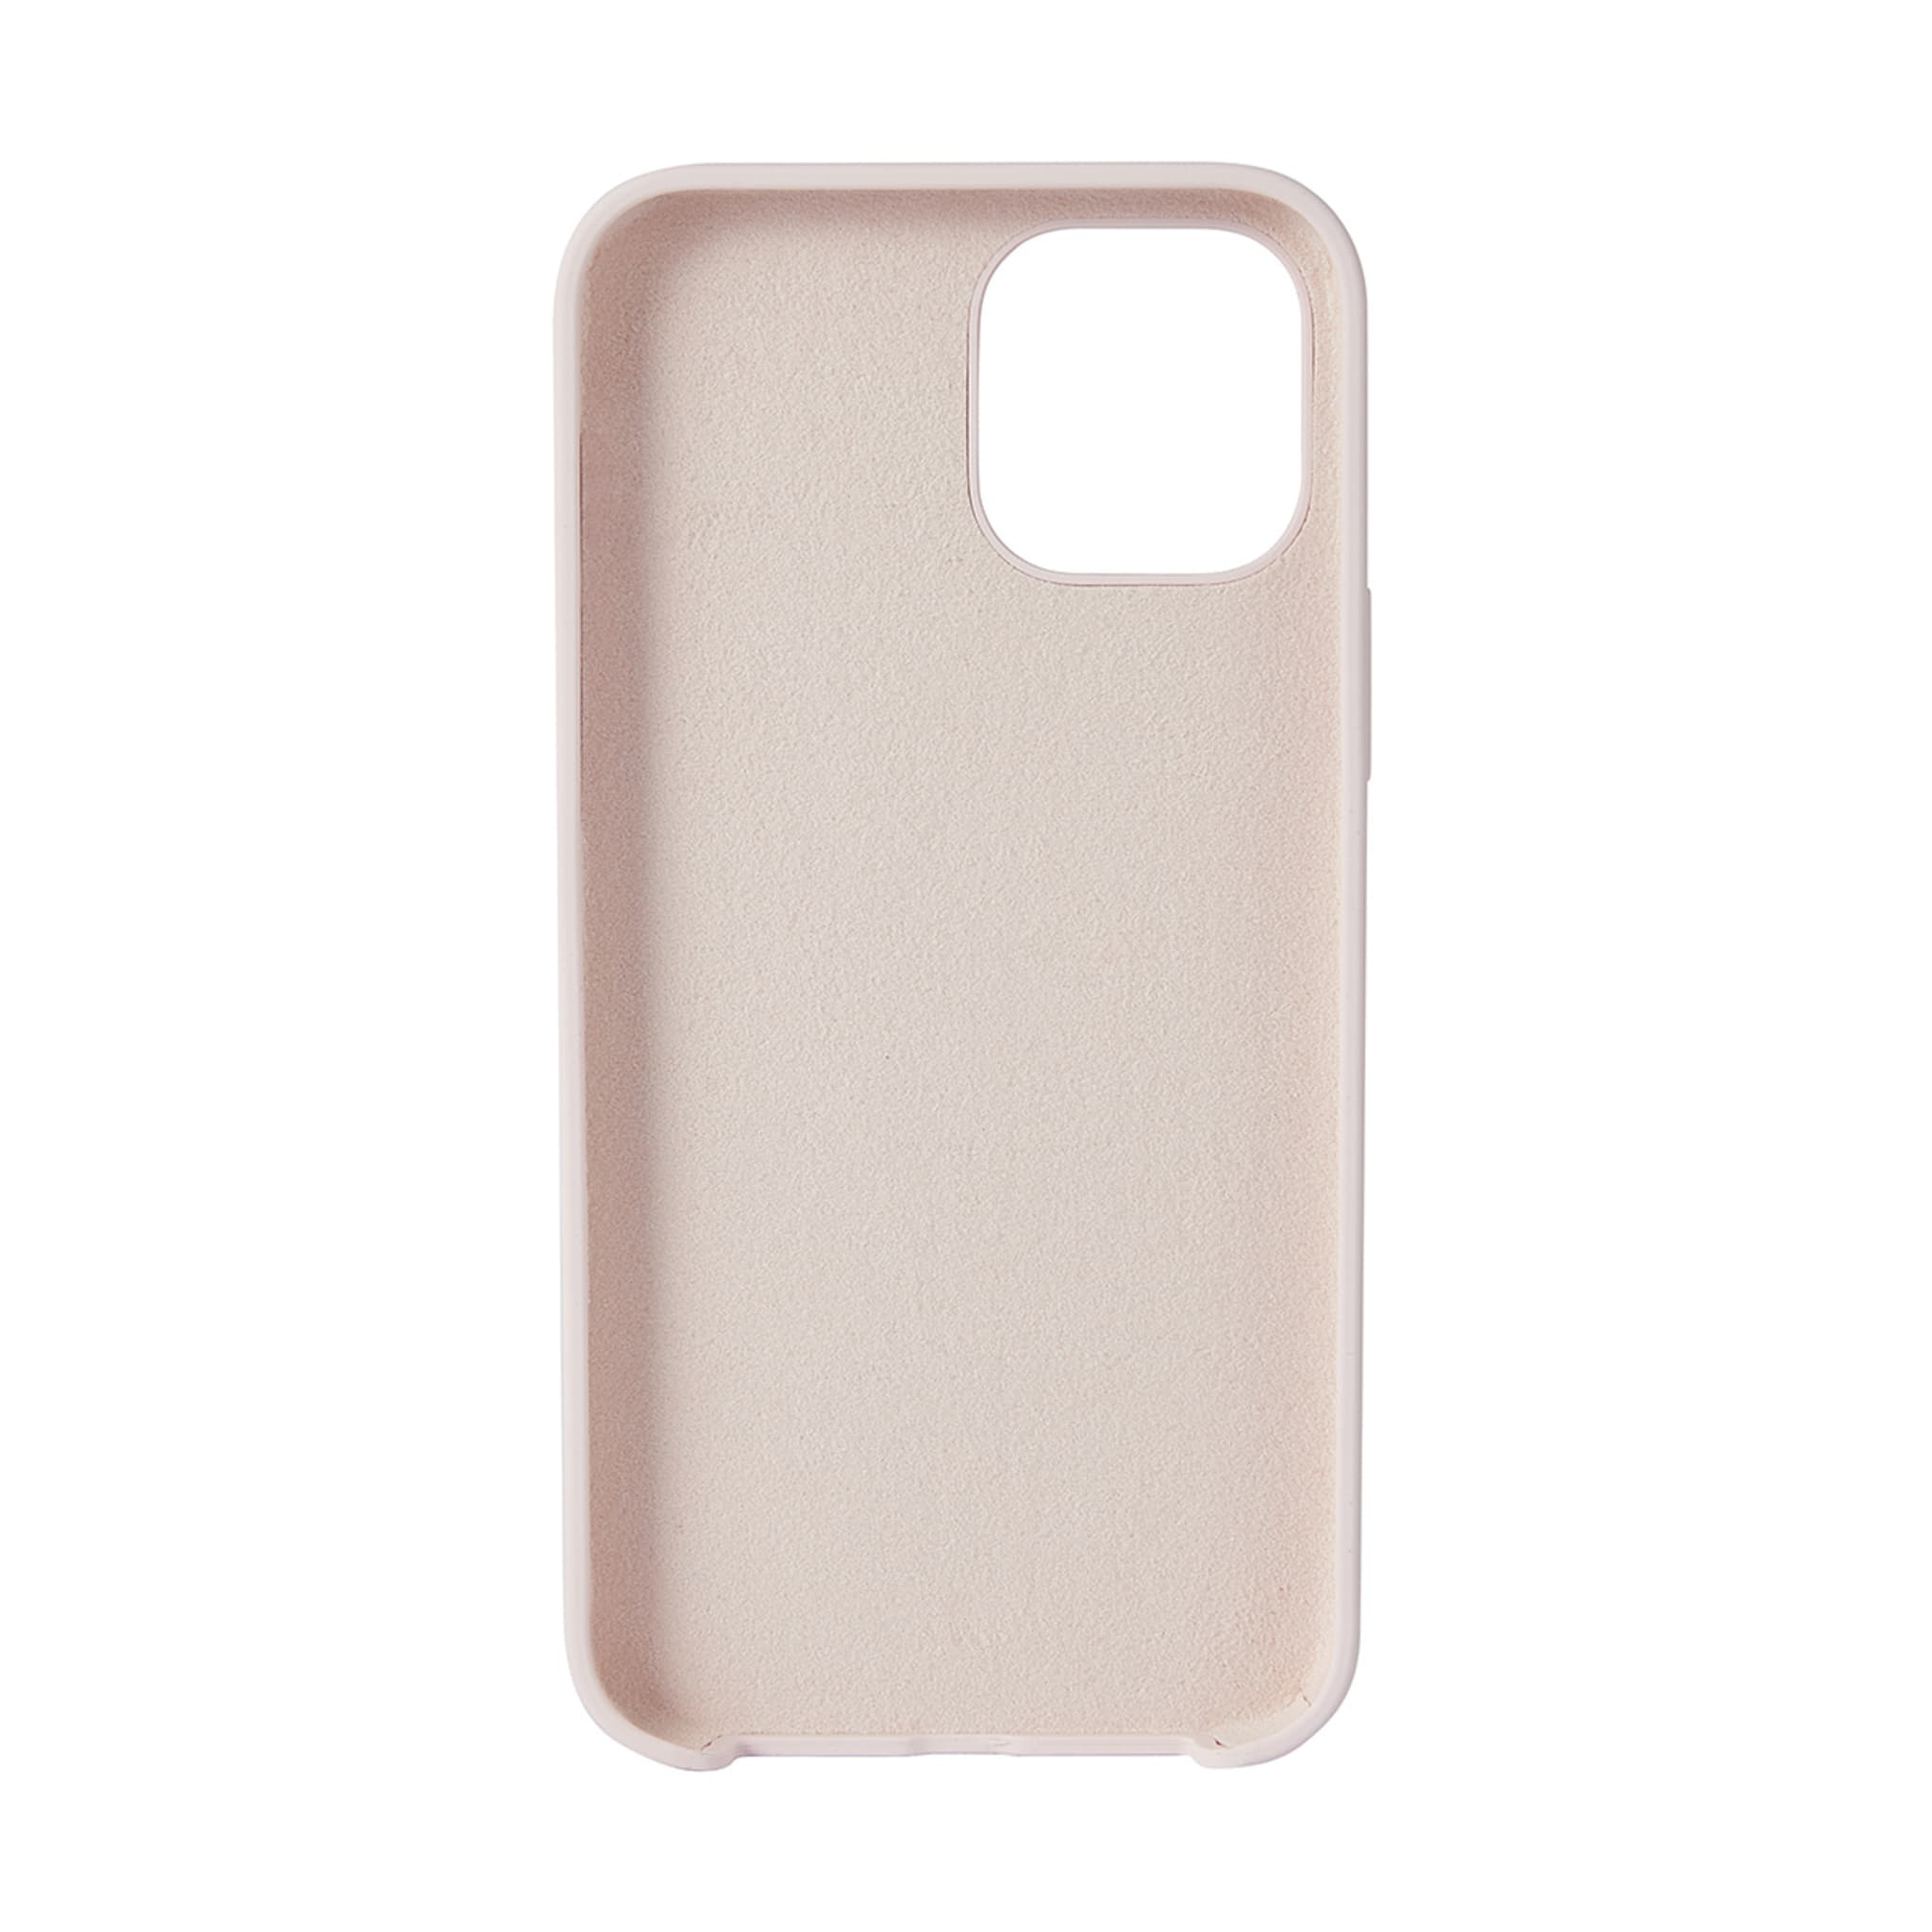 iPhone 12 Pro Silicone Case - Blush - Kmart